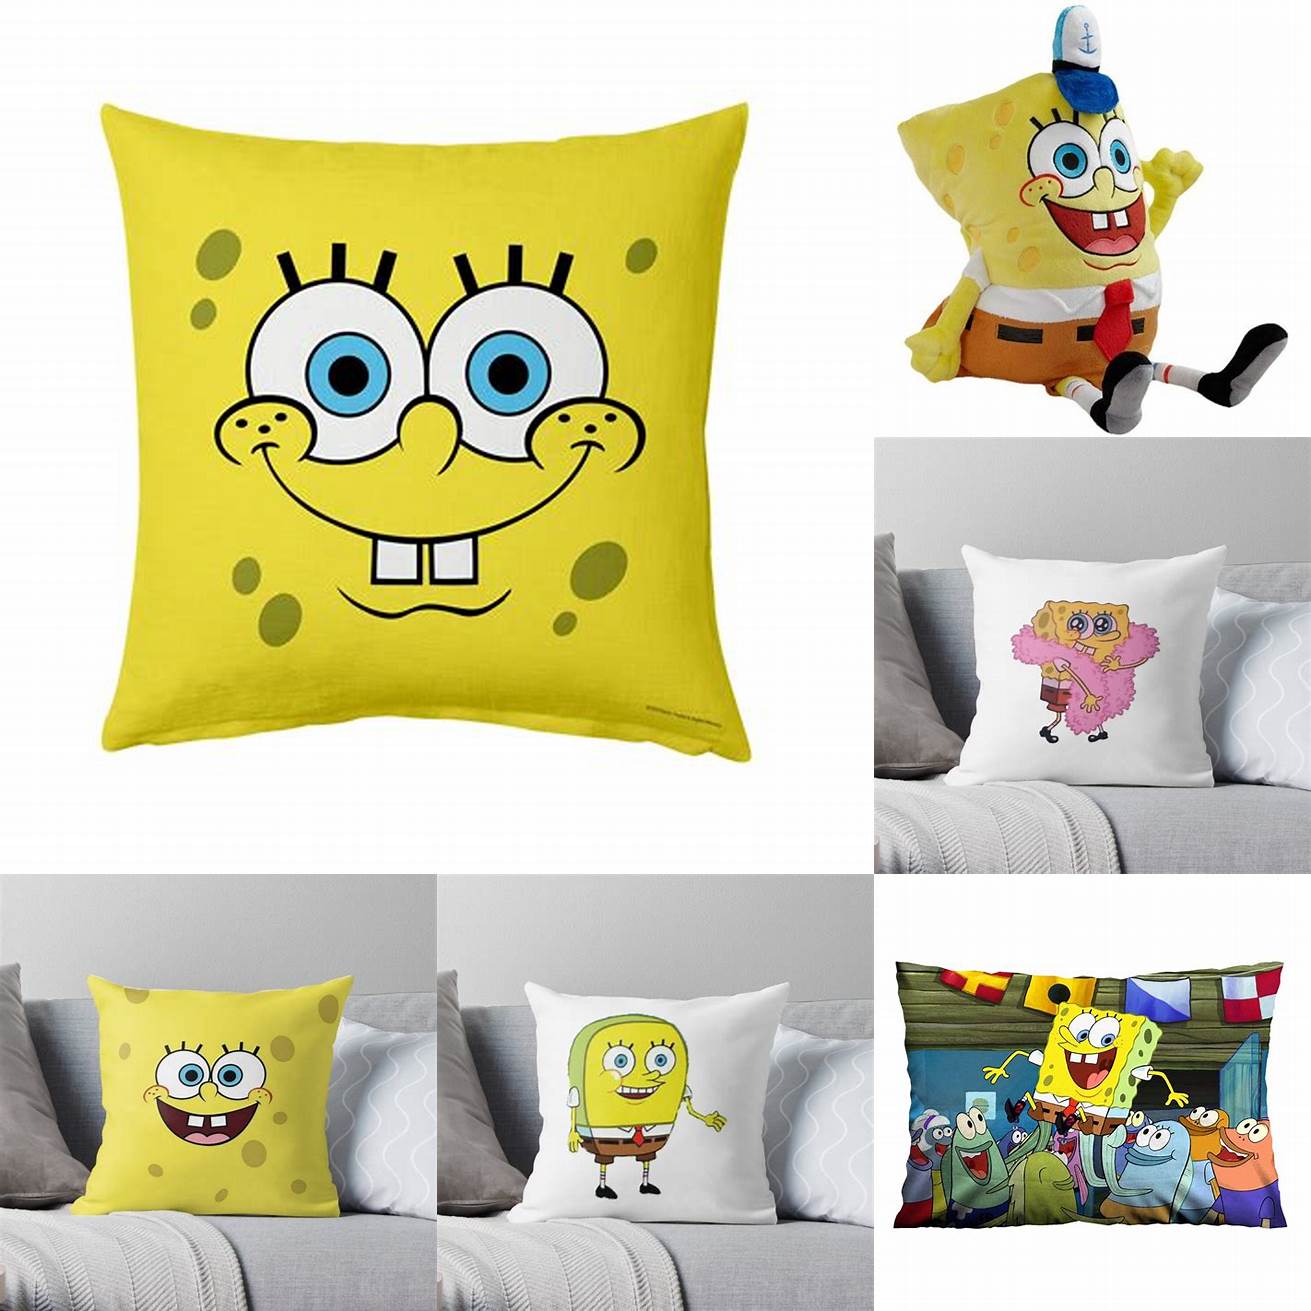 Cute Spongebob Throw Pillow